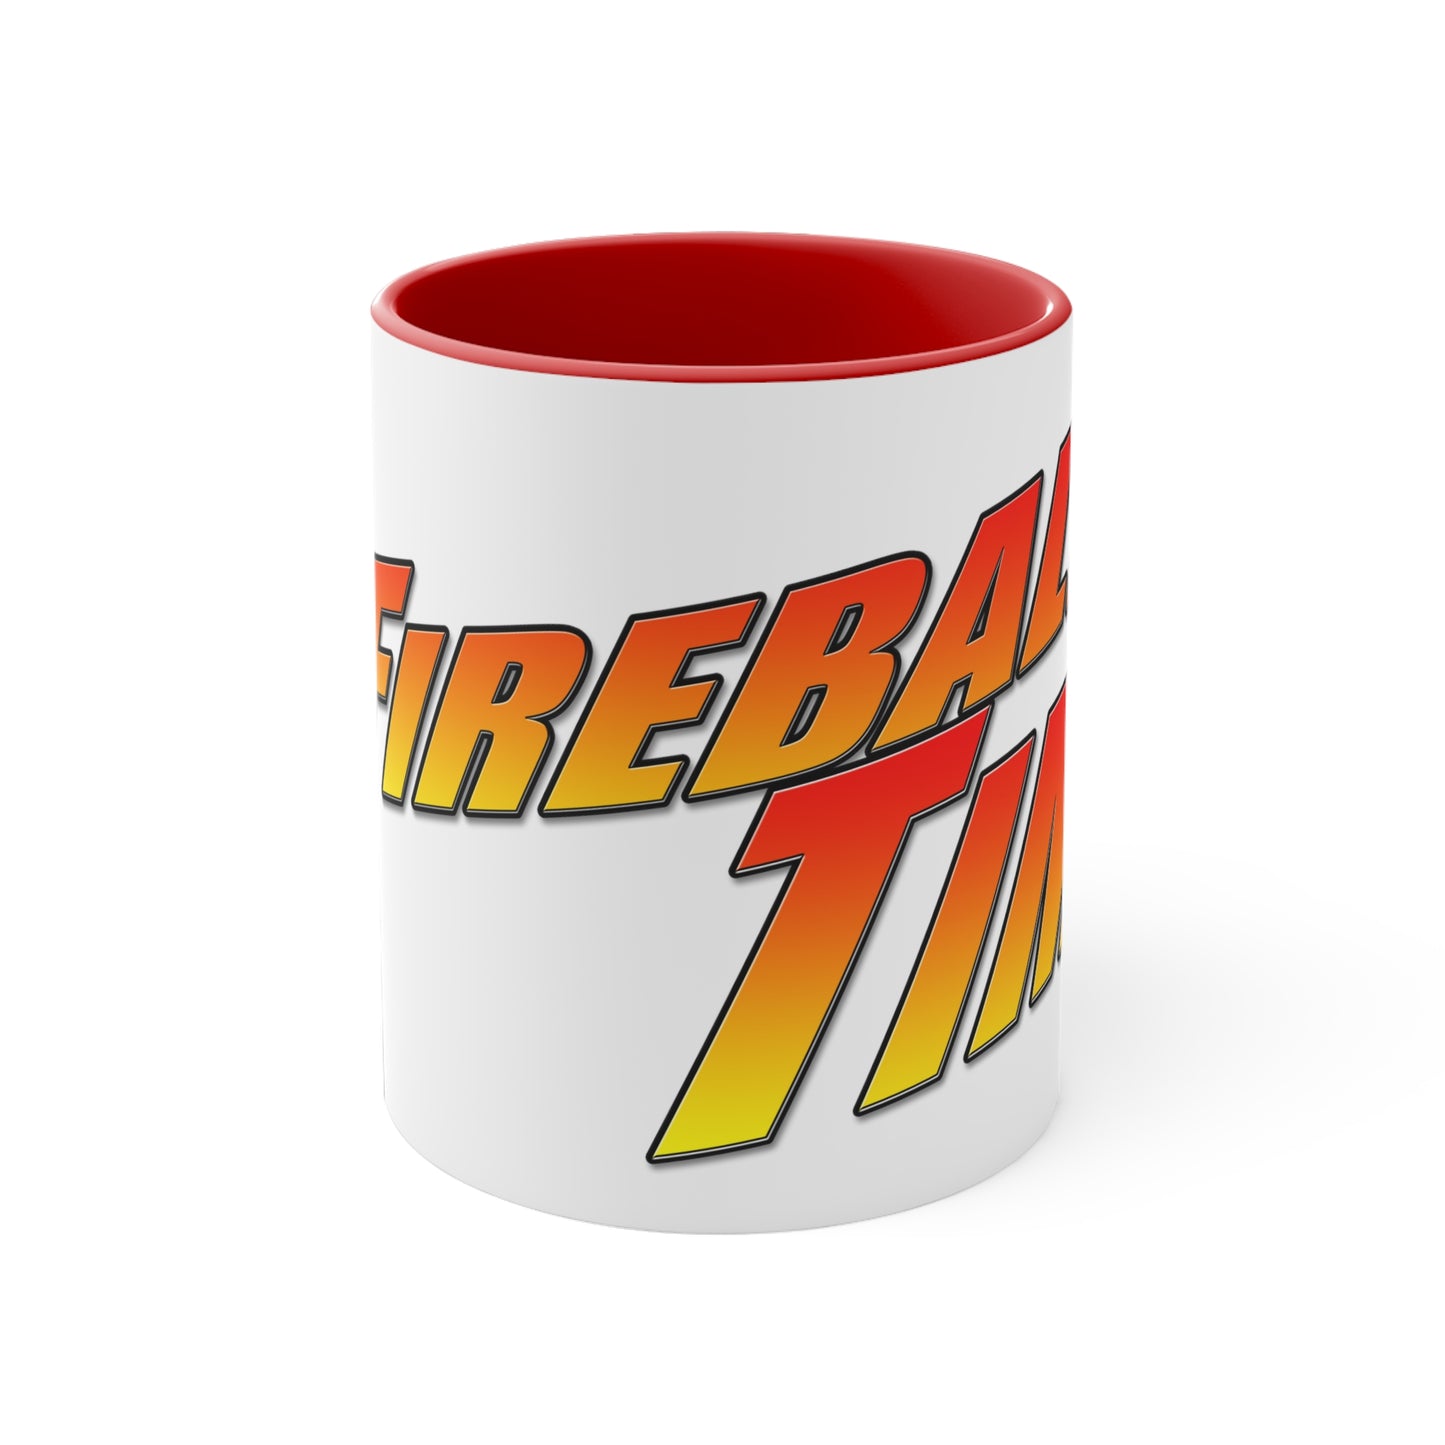 FIREBALL TIM Official Coffee Mug, 11oz